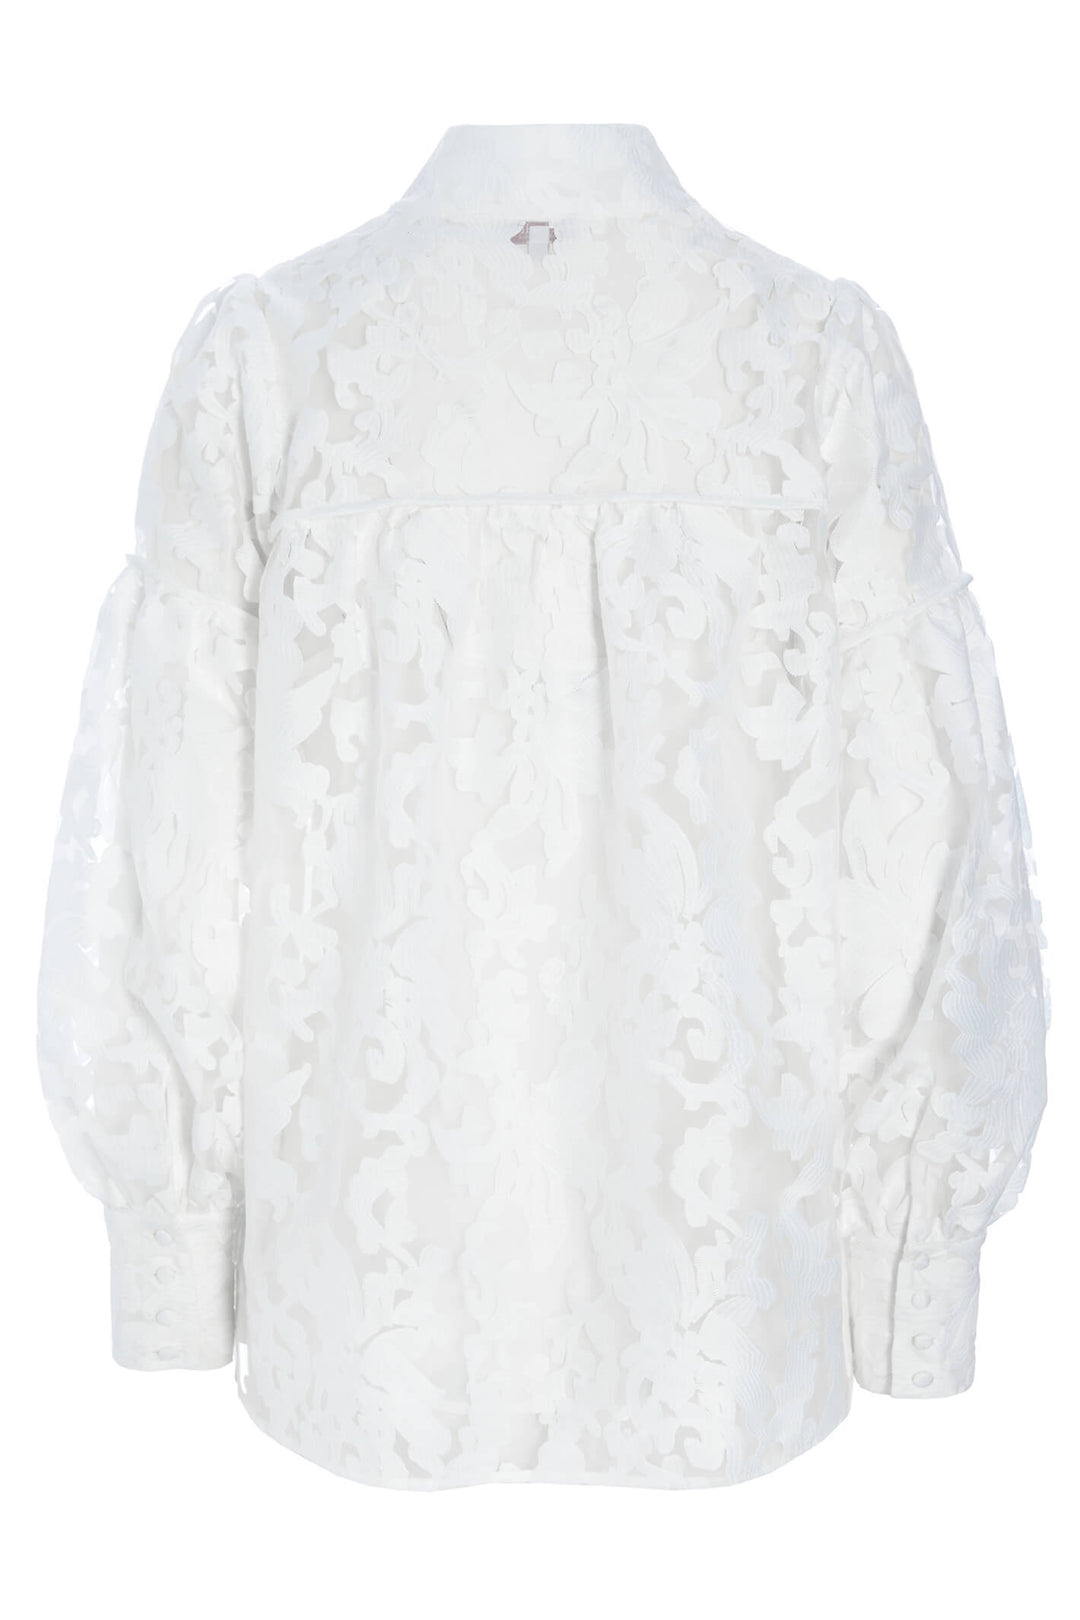 Dea Kudibal Maxine 23-0123 Fleur Natural White Long Sleeve Top - Olivia Grace Fashion